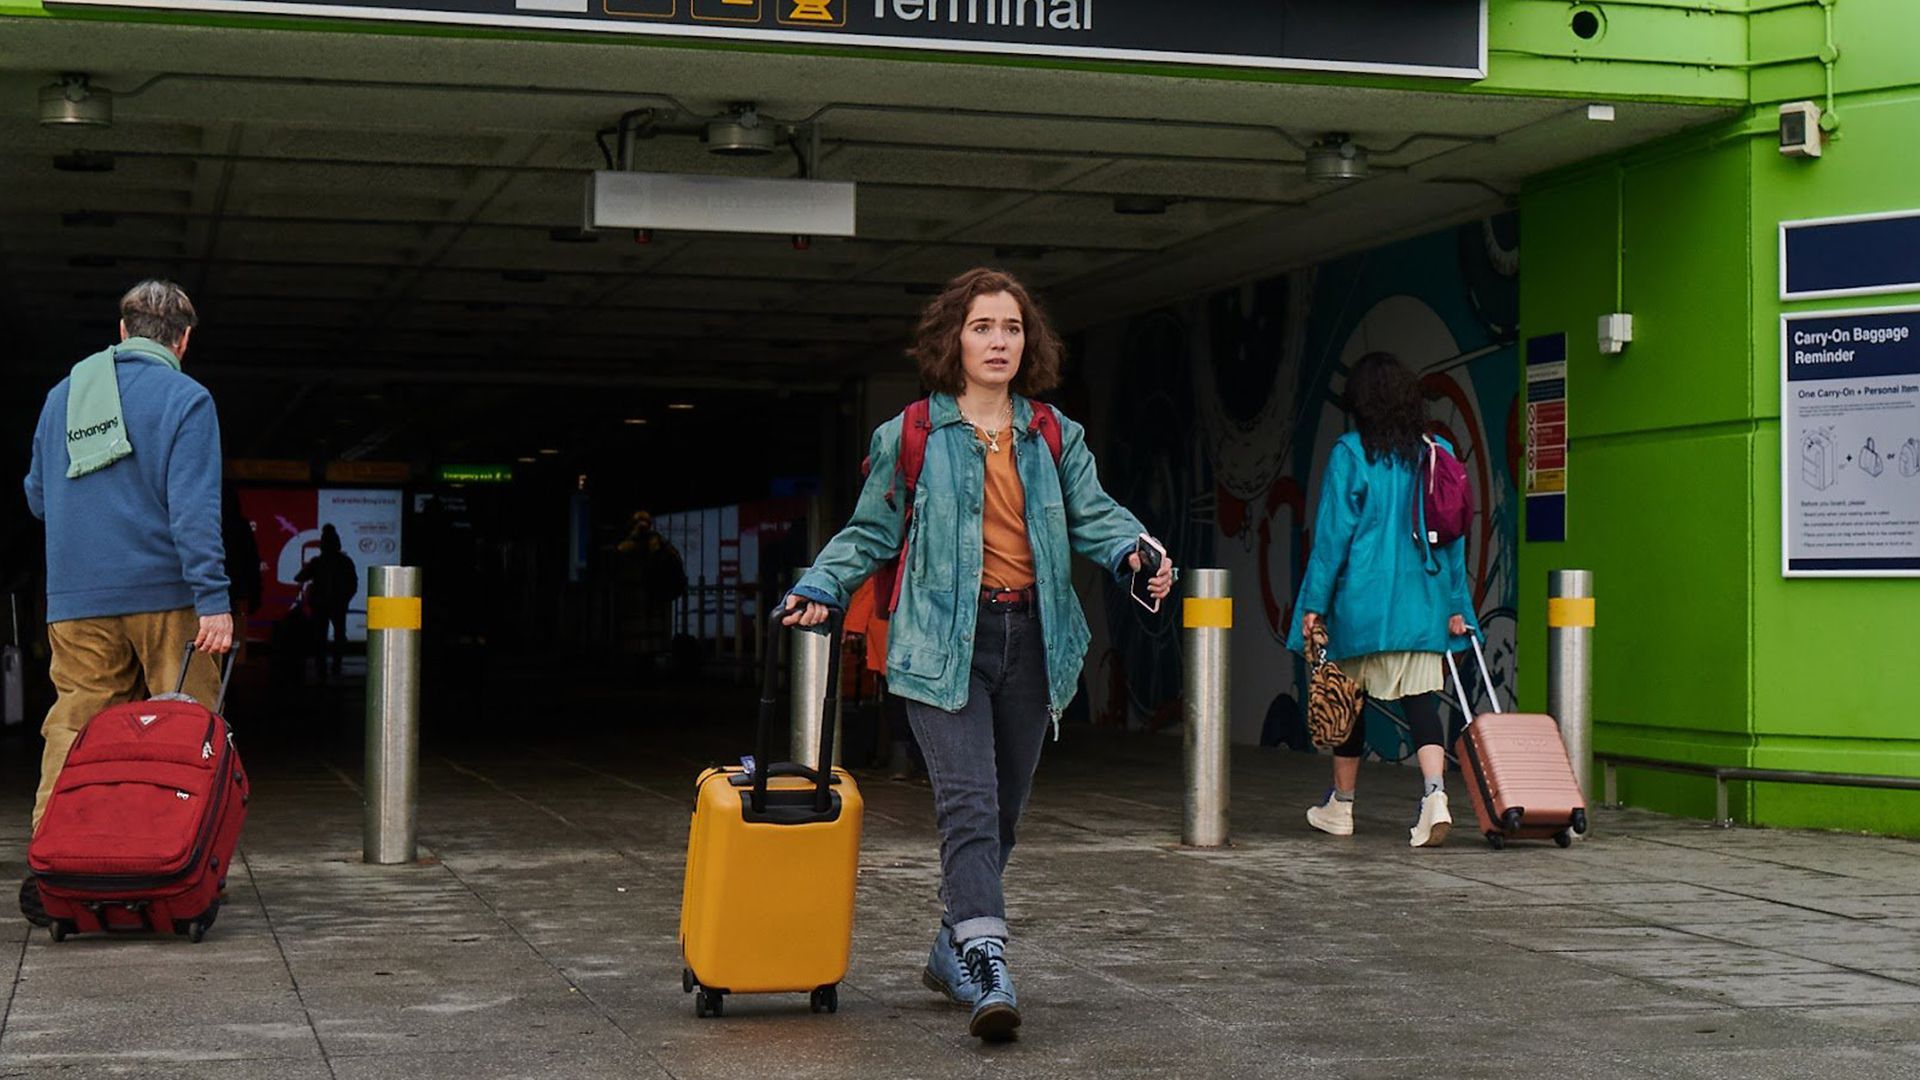 هالی لو ریچاردسون در حال خروج از فرودگاه در فیلم Love at First Sight